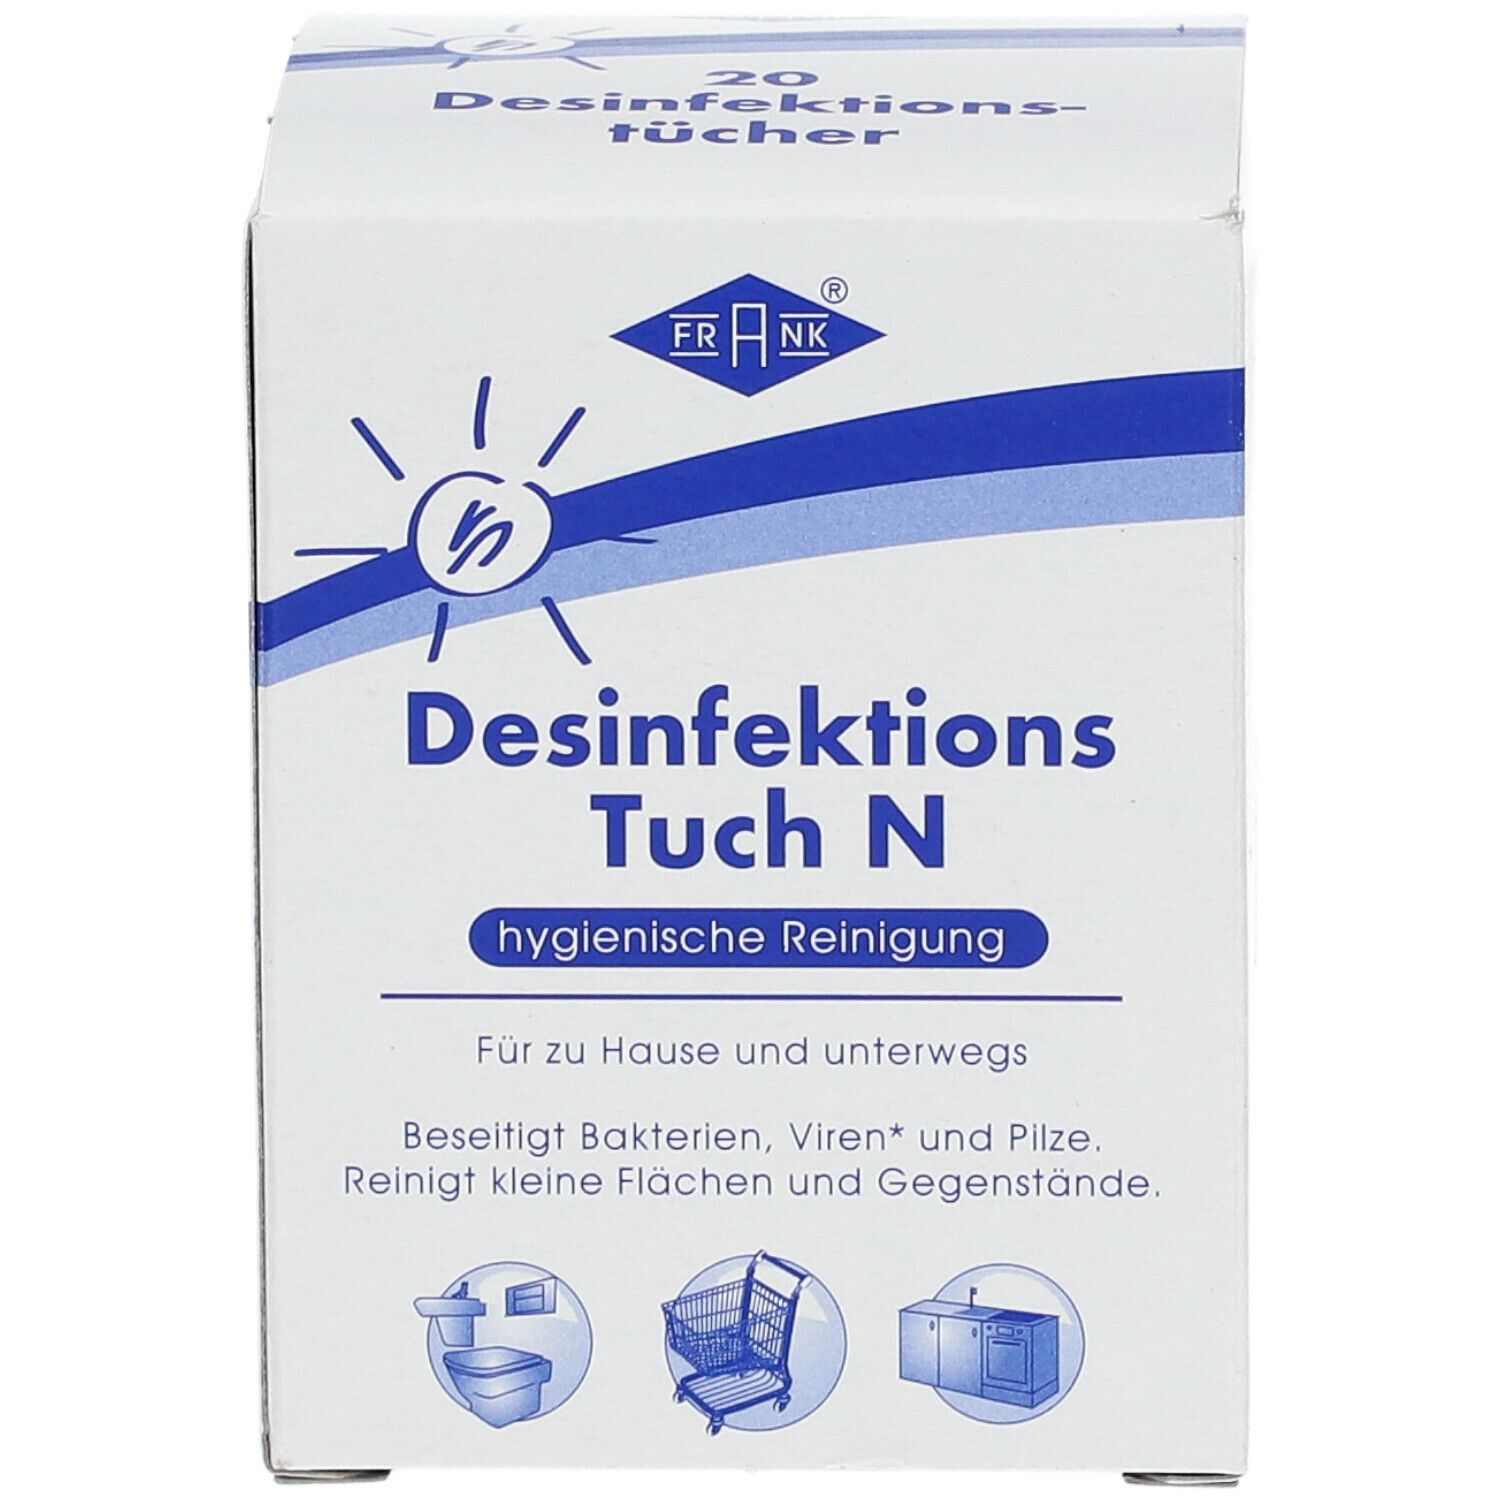 FRANK® Desinfektions Tuch N